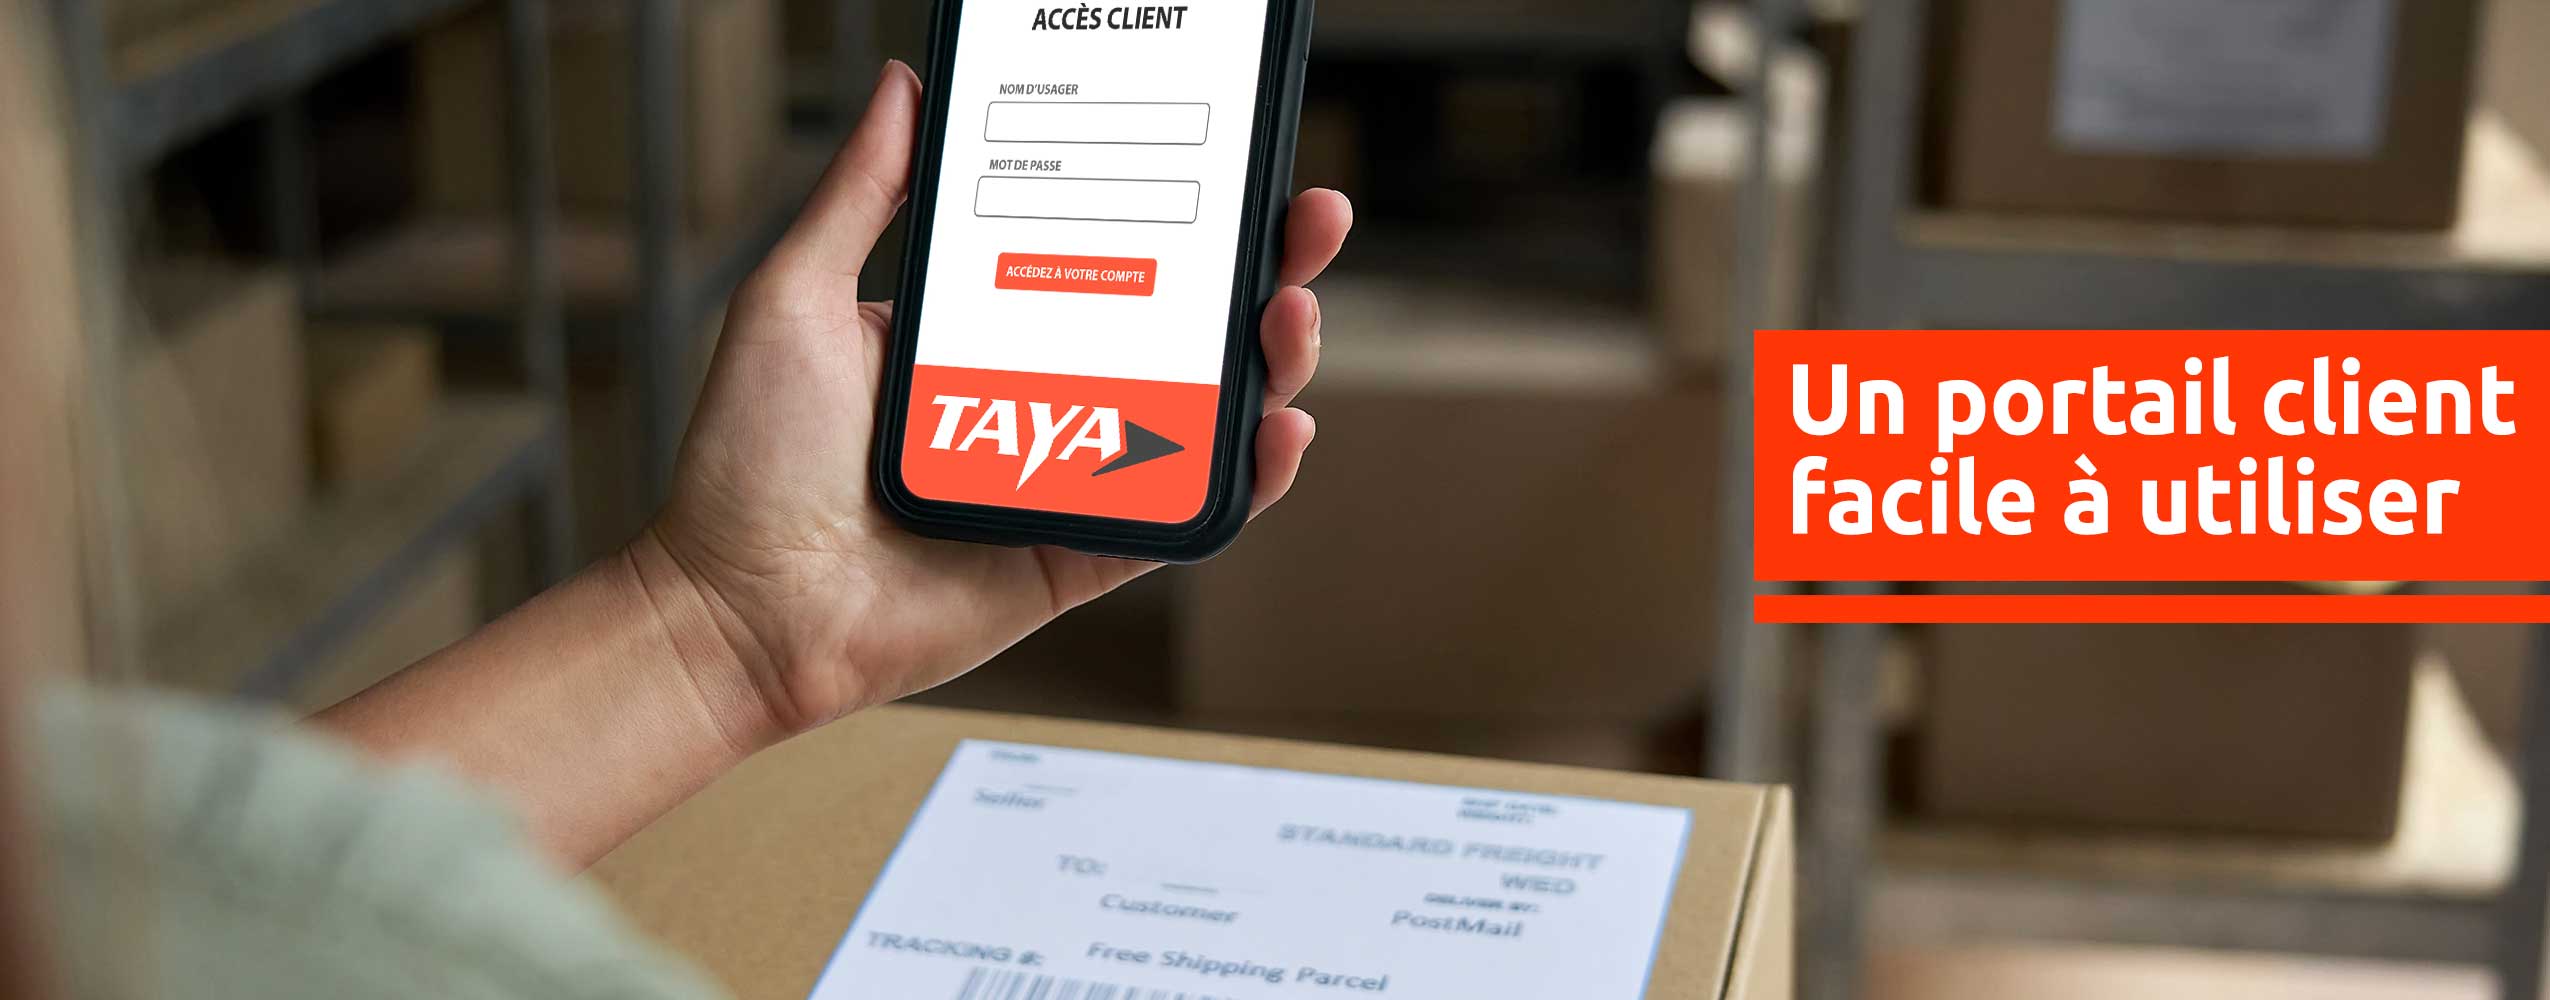 Taya Courrier - Un portail client facile à utiliser